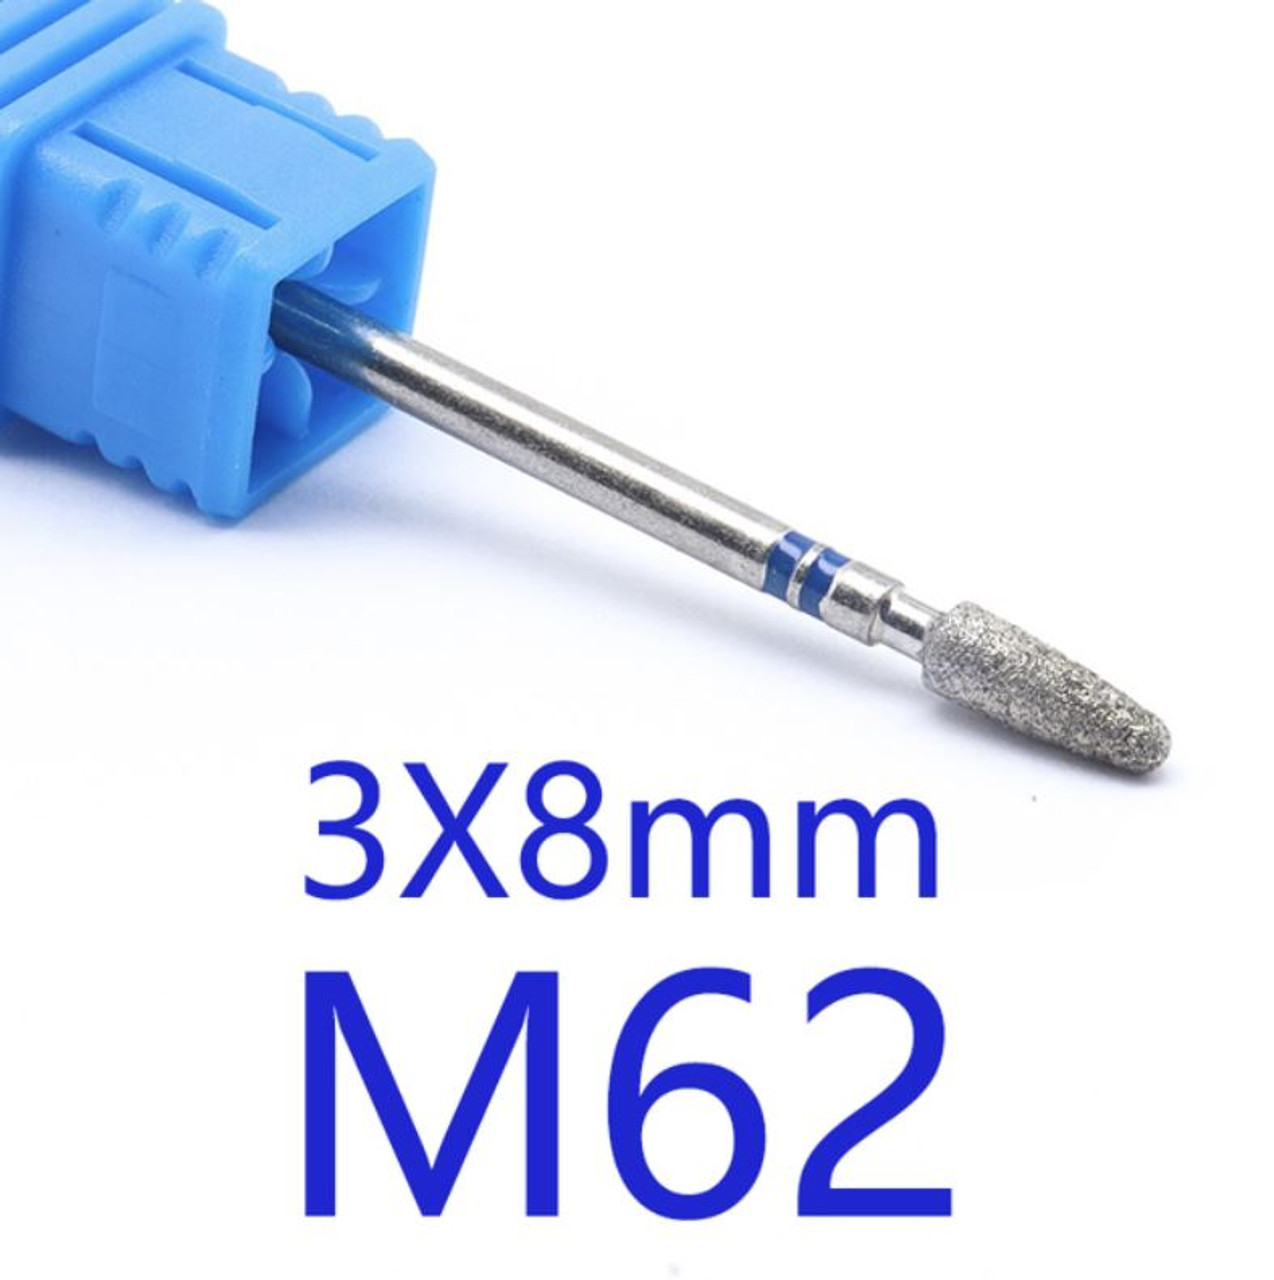 NDi beauty Diamond Drill Bit - 3/32 shank (MEDIUM) - M62